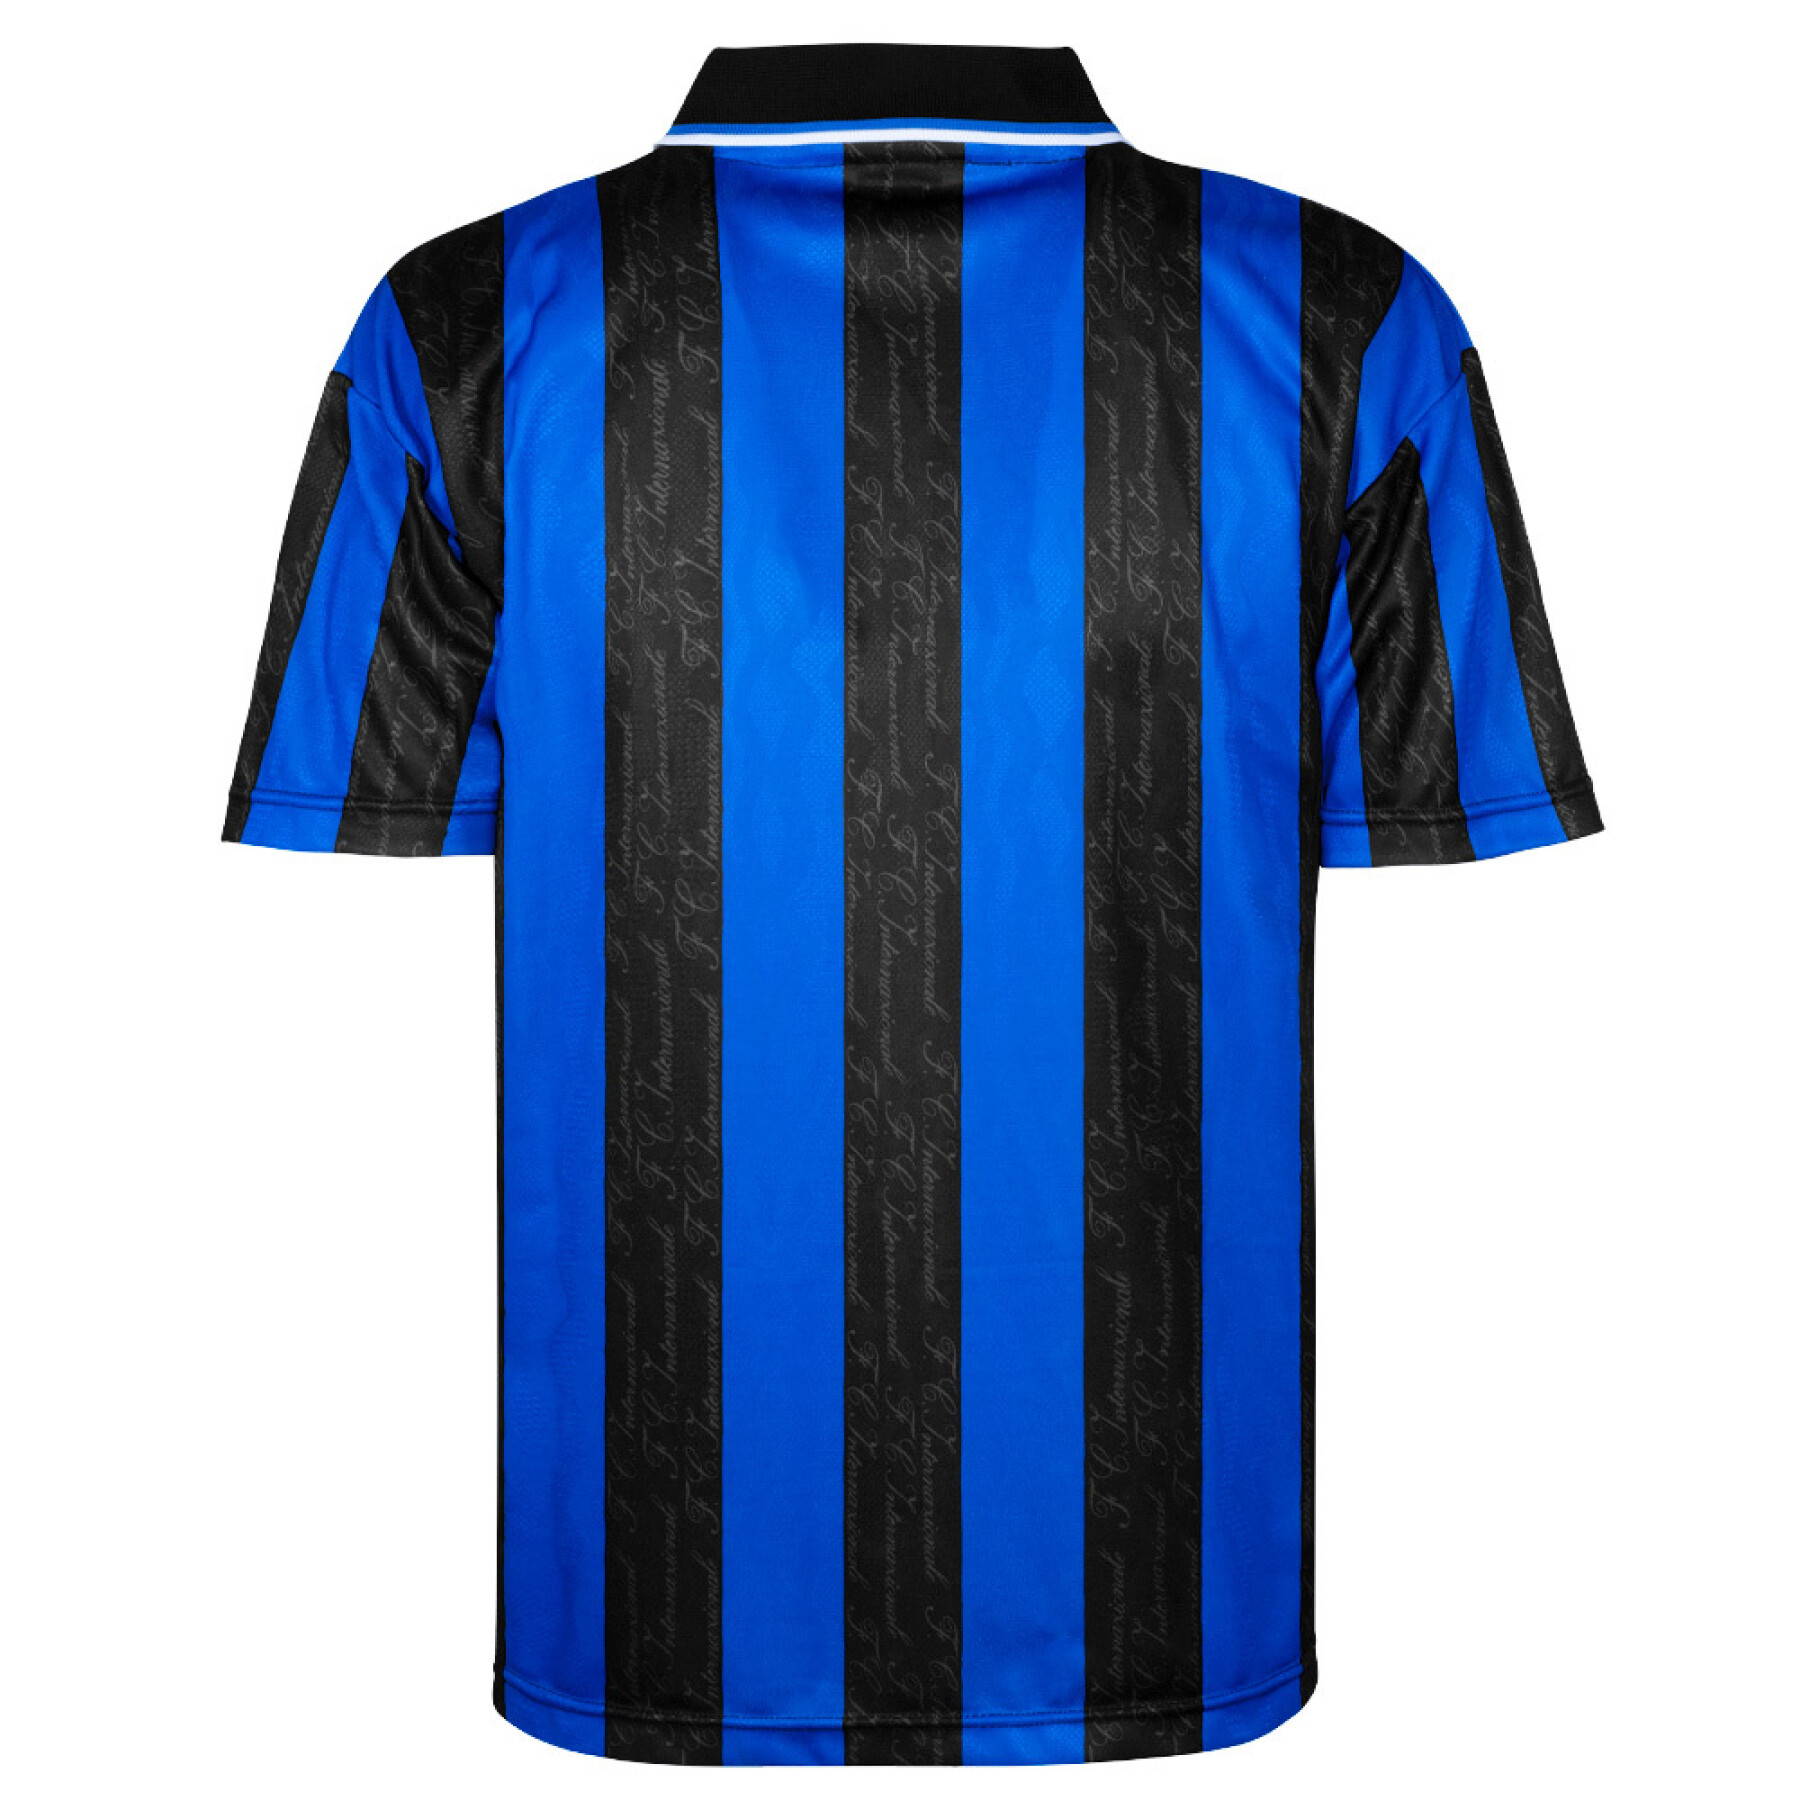 Heritage home jersey Inter Milan 1998/99